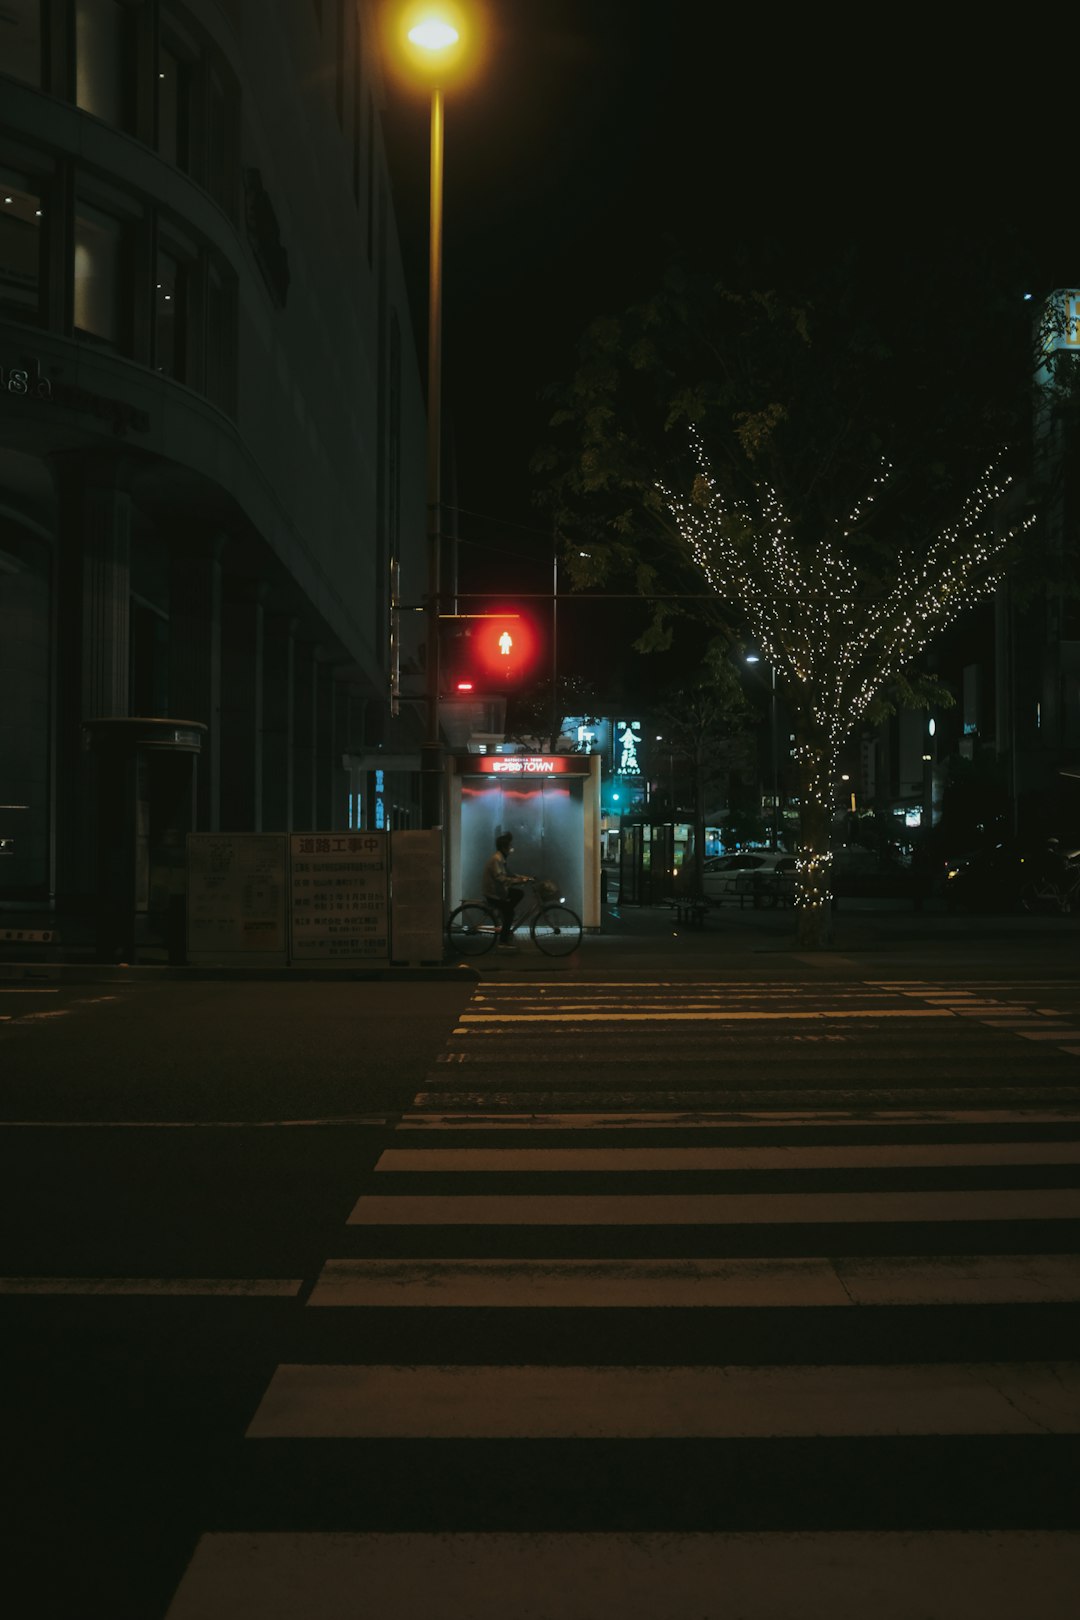 people walking on pedestrian lane during night time